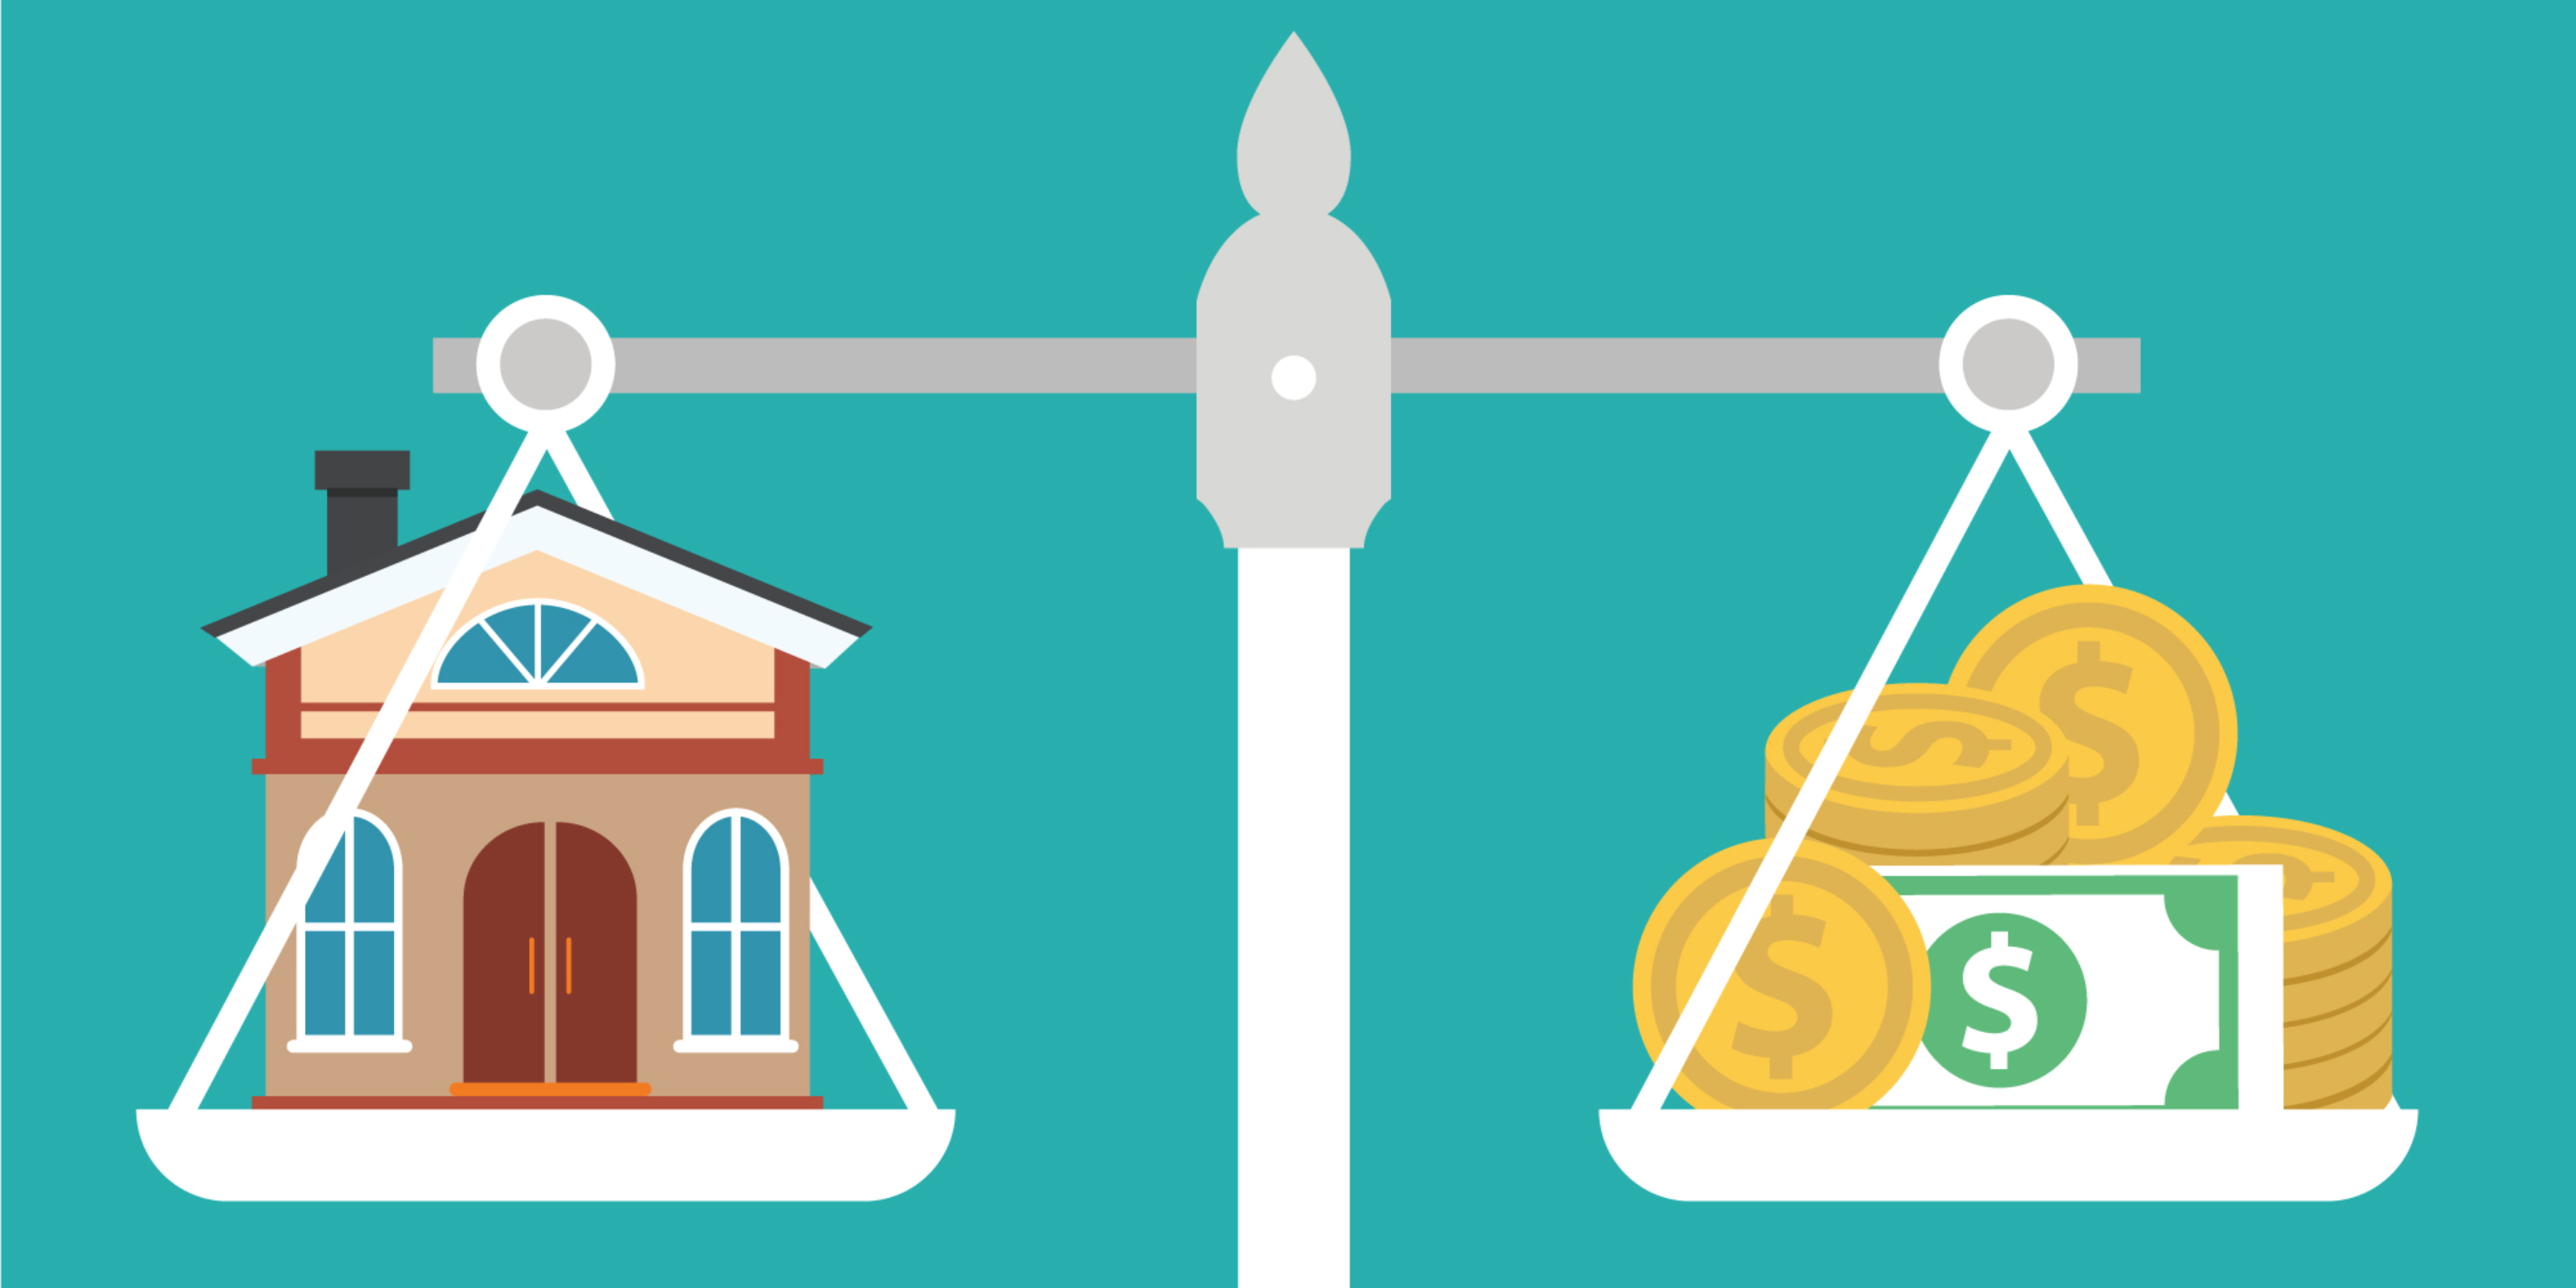 Casa en Venta: Encuentra el Equilibrio entre Precio y Ubicación